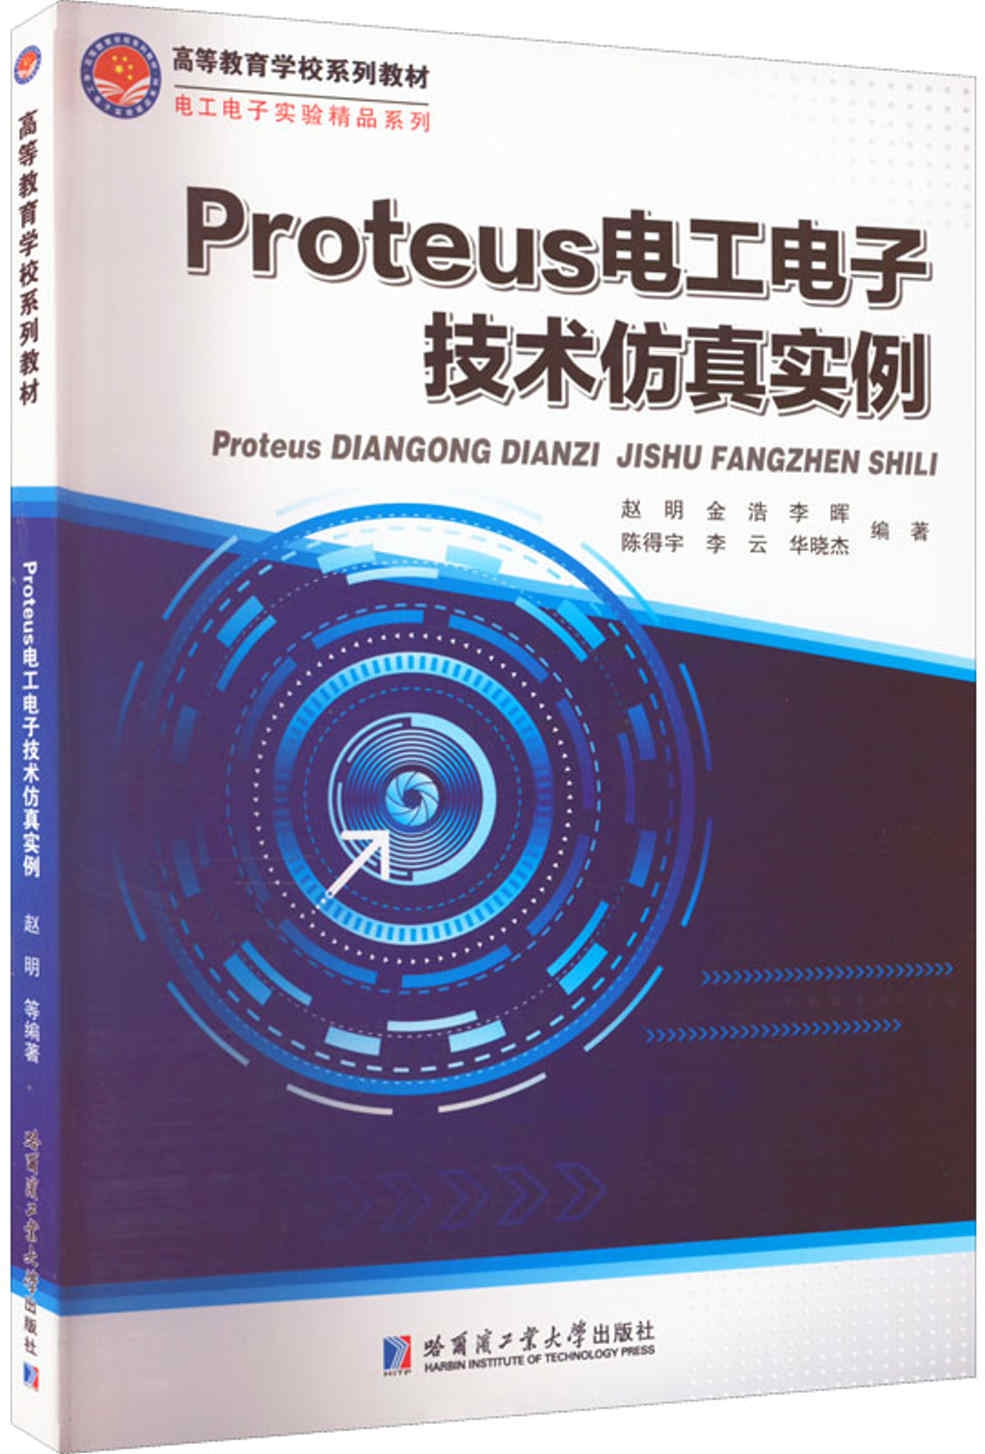 Proteus電工電子技術仿真實例